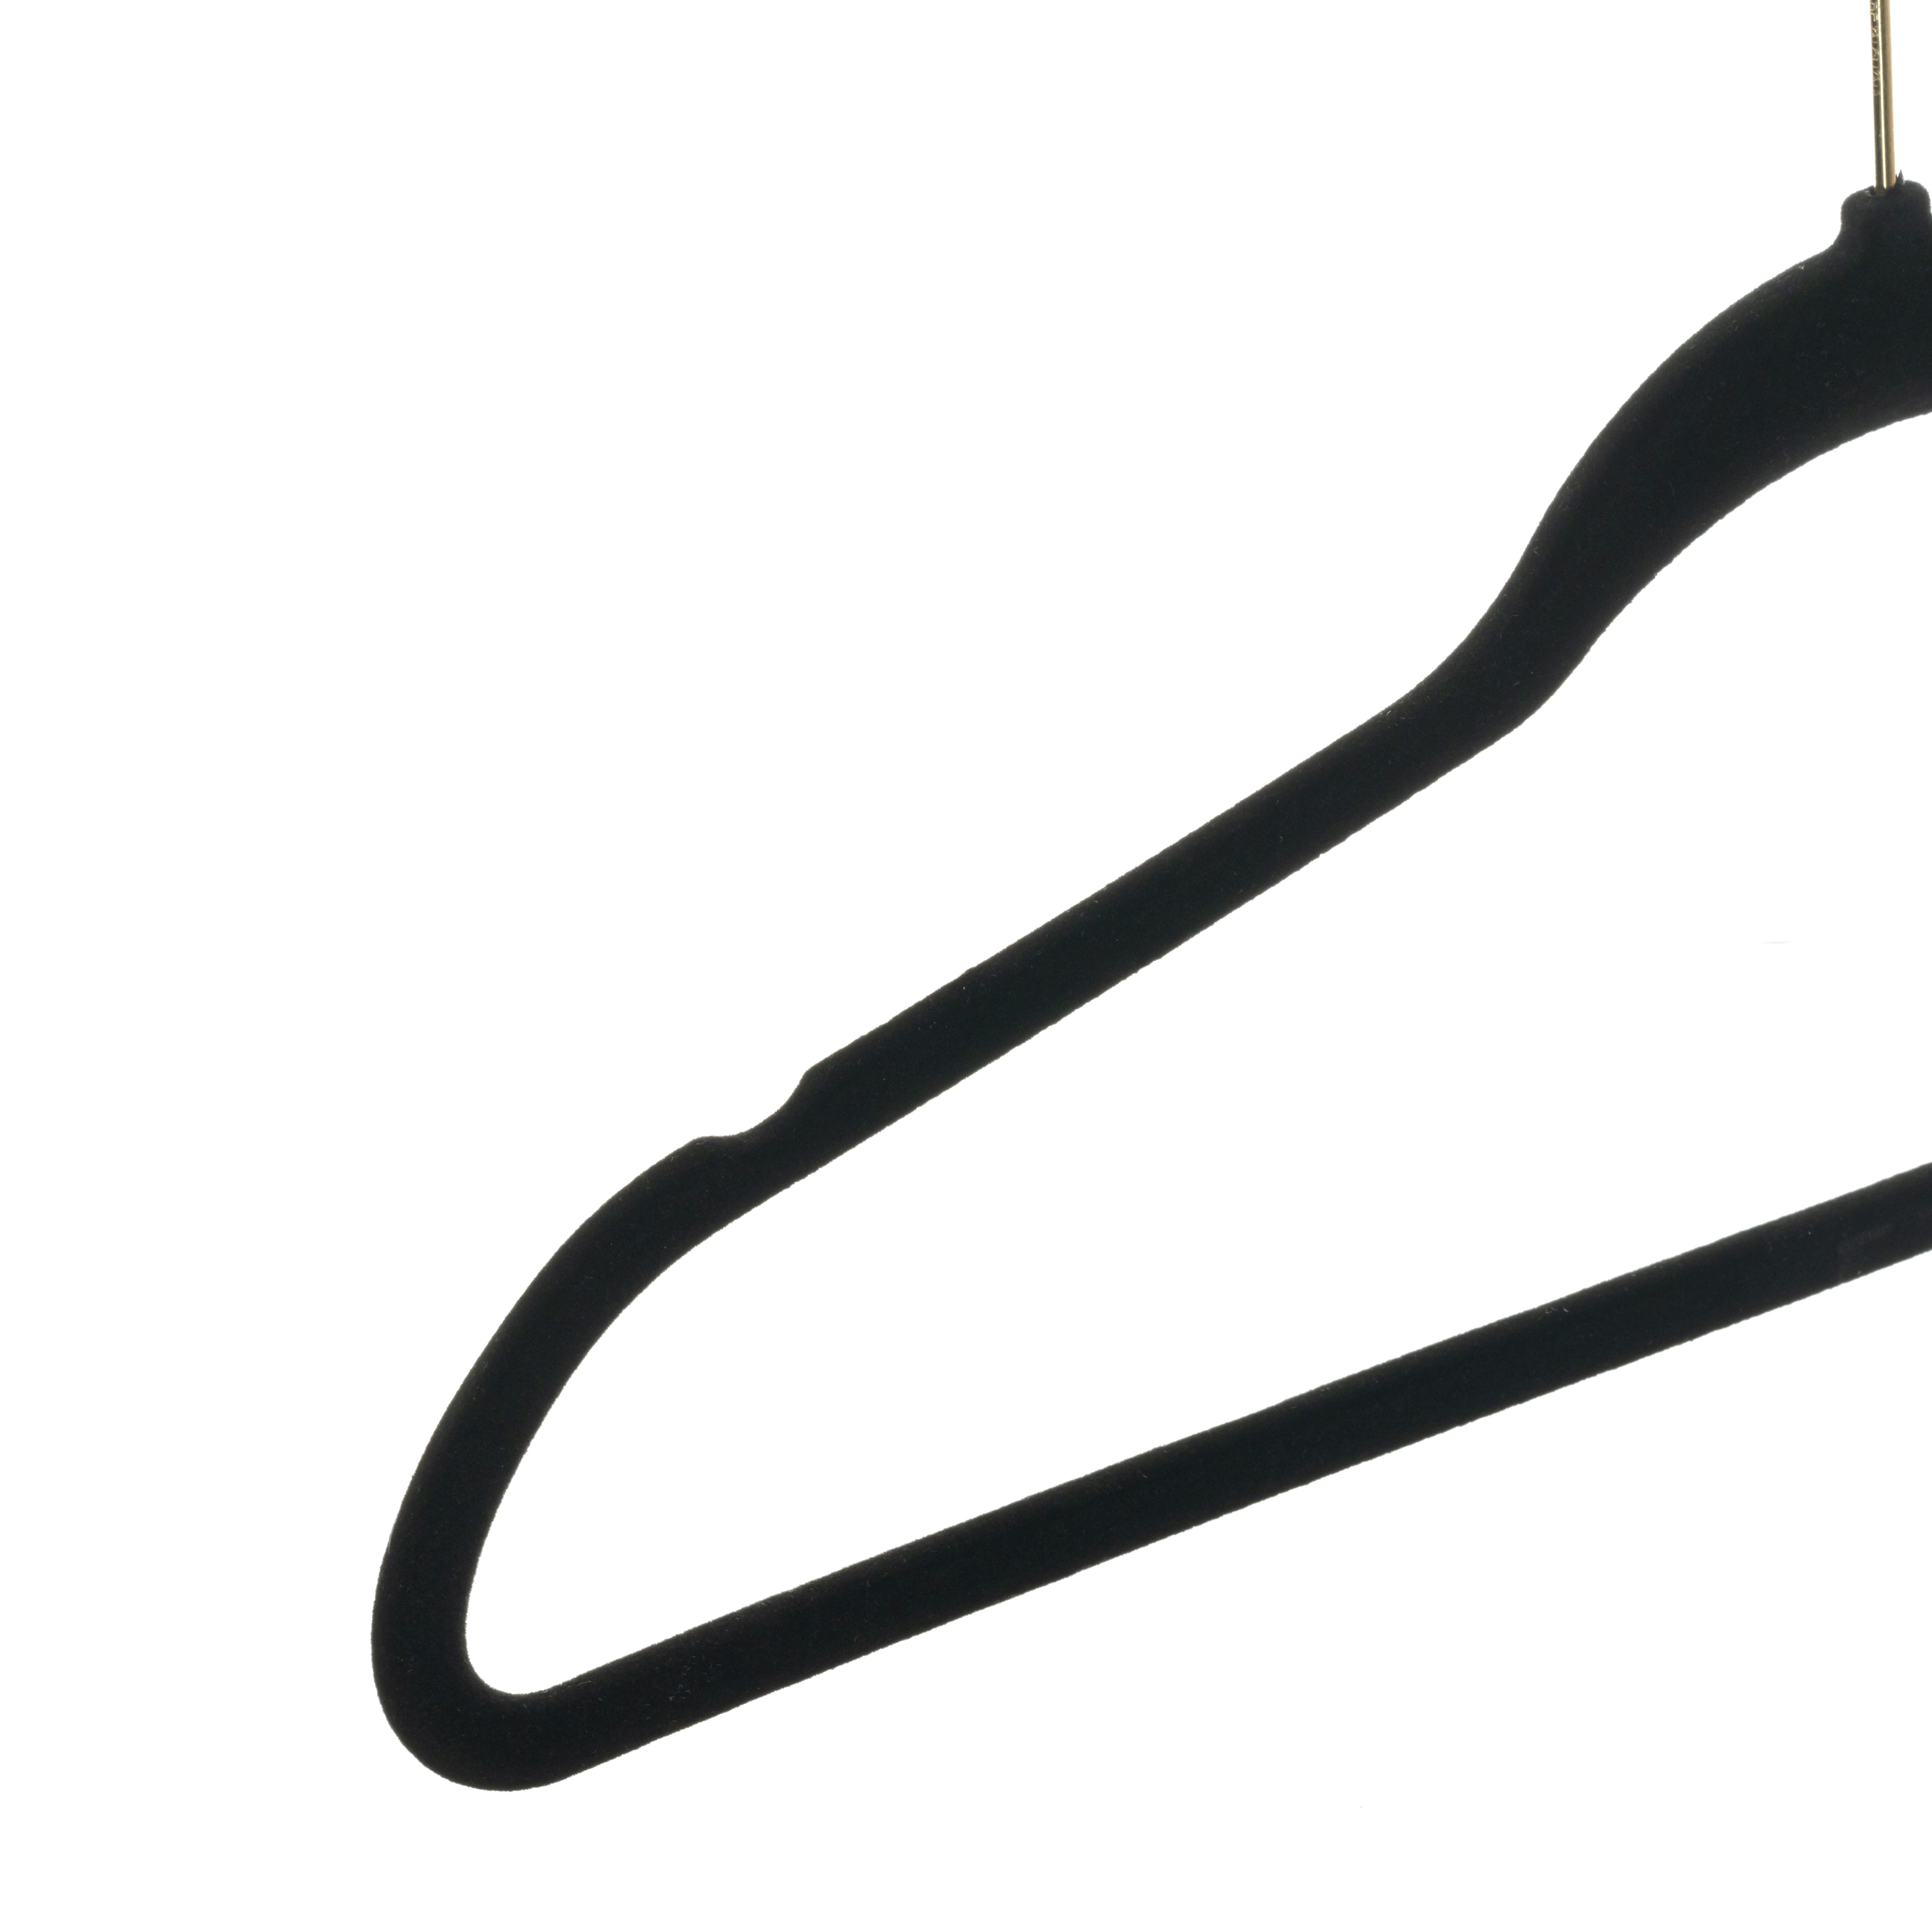  Micuul Velvet Hangers 50 Pack, Black Hangers with Tie